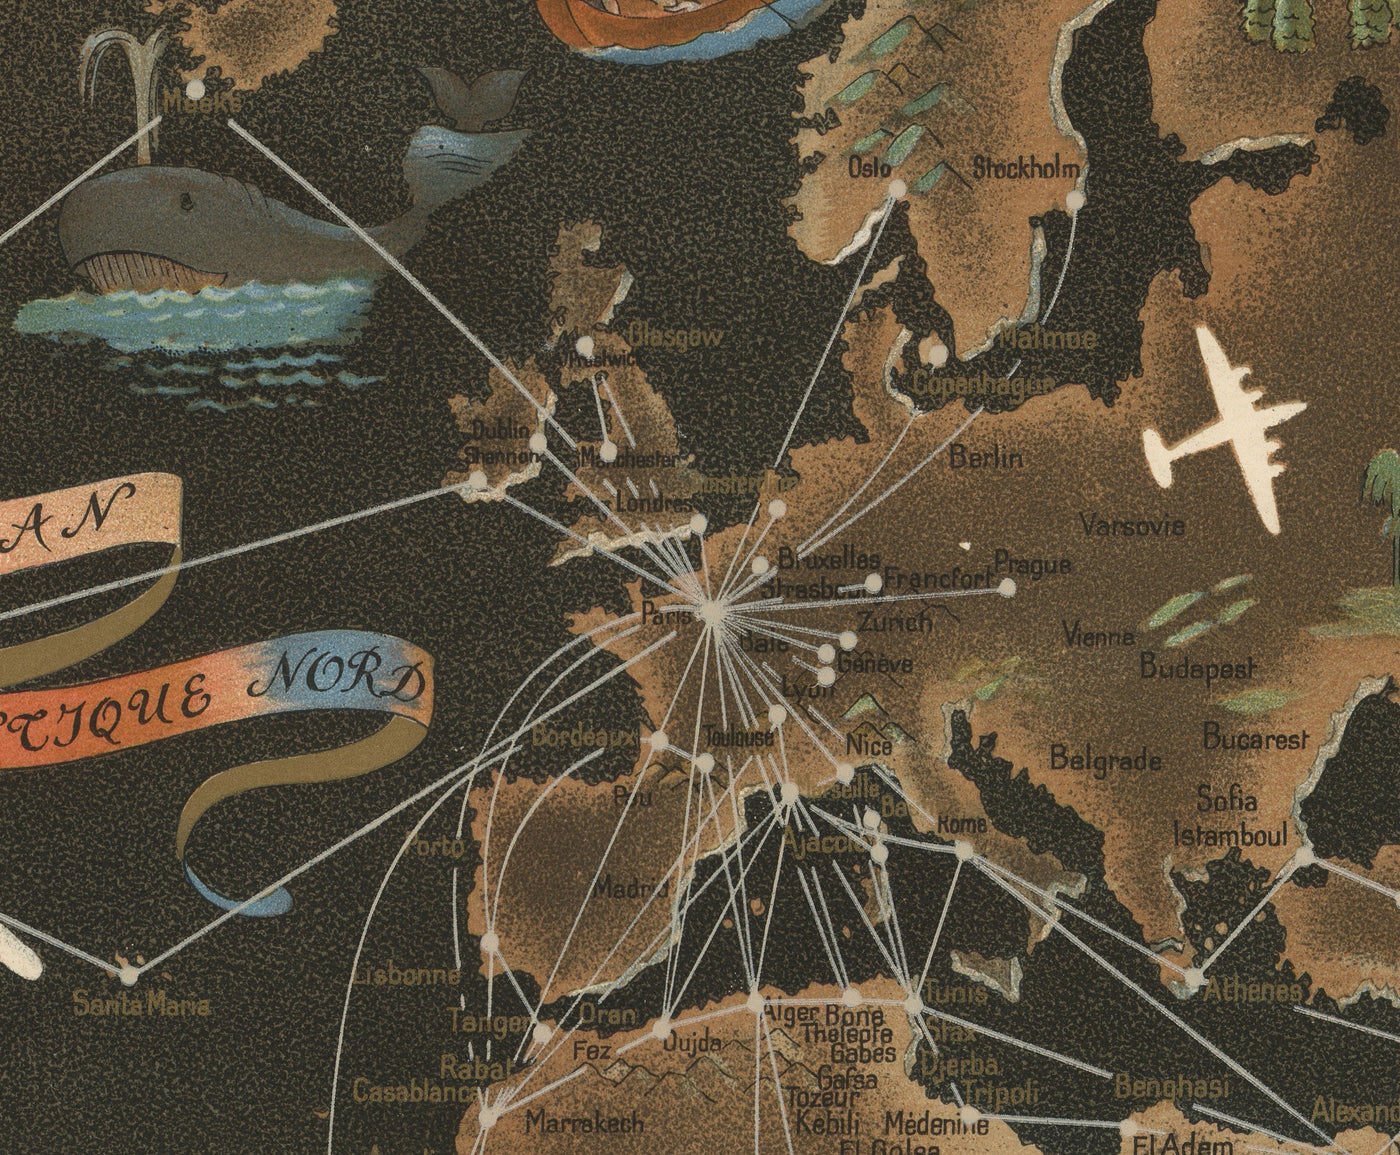 Old Air France World Carte, 1947 par Lucien Boucher - Grand parcours de route d'aéronefs - Art de la compagnie aérienne historique